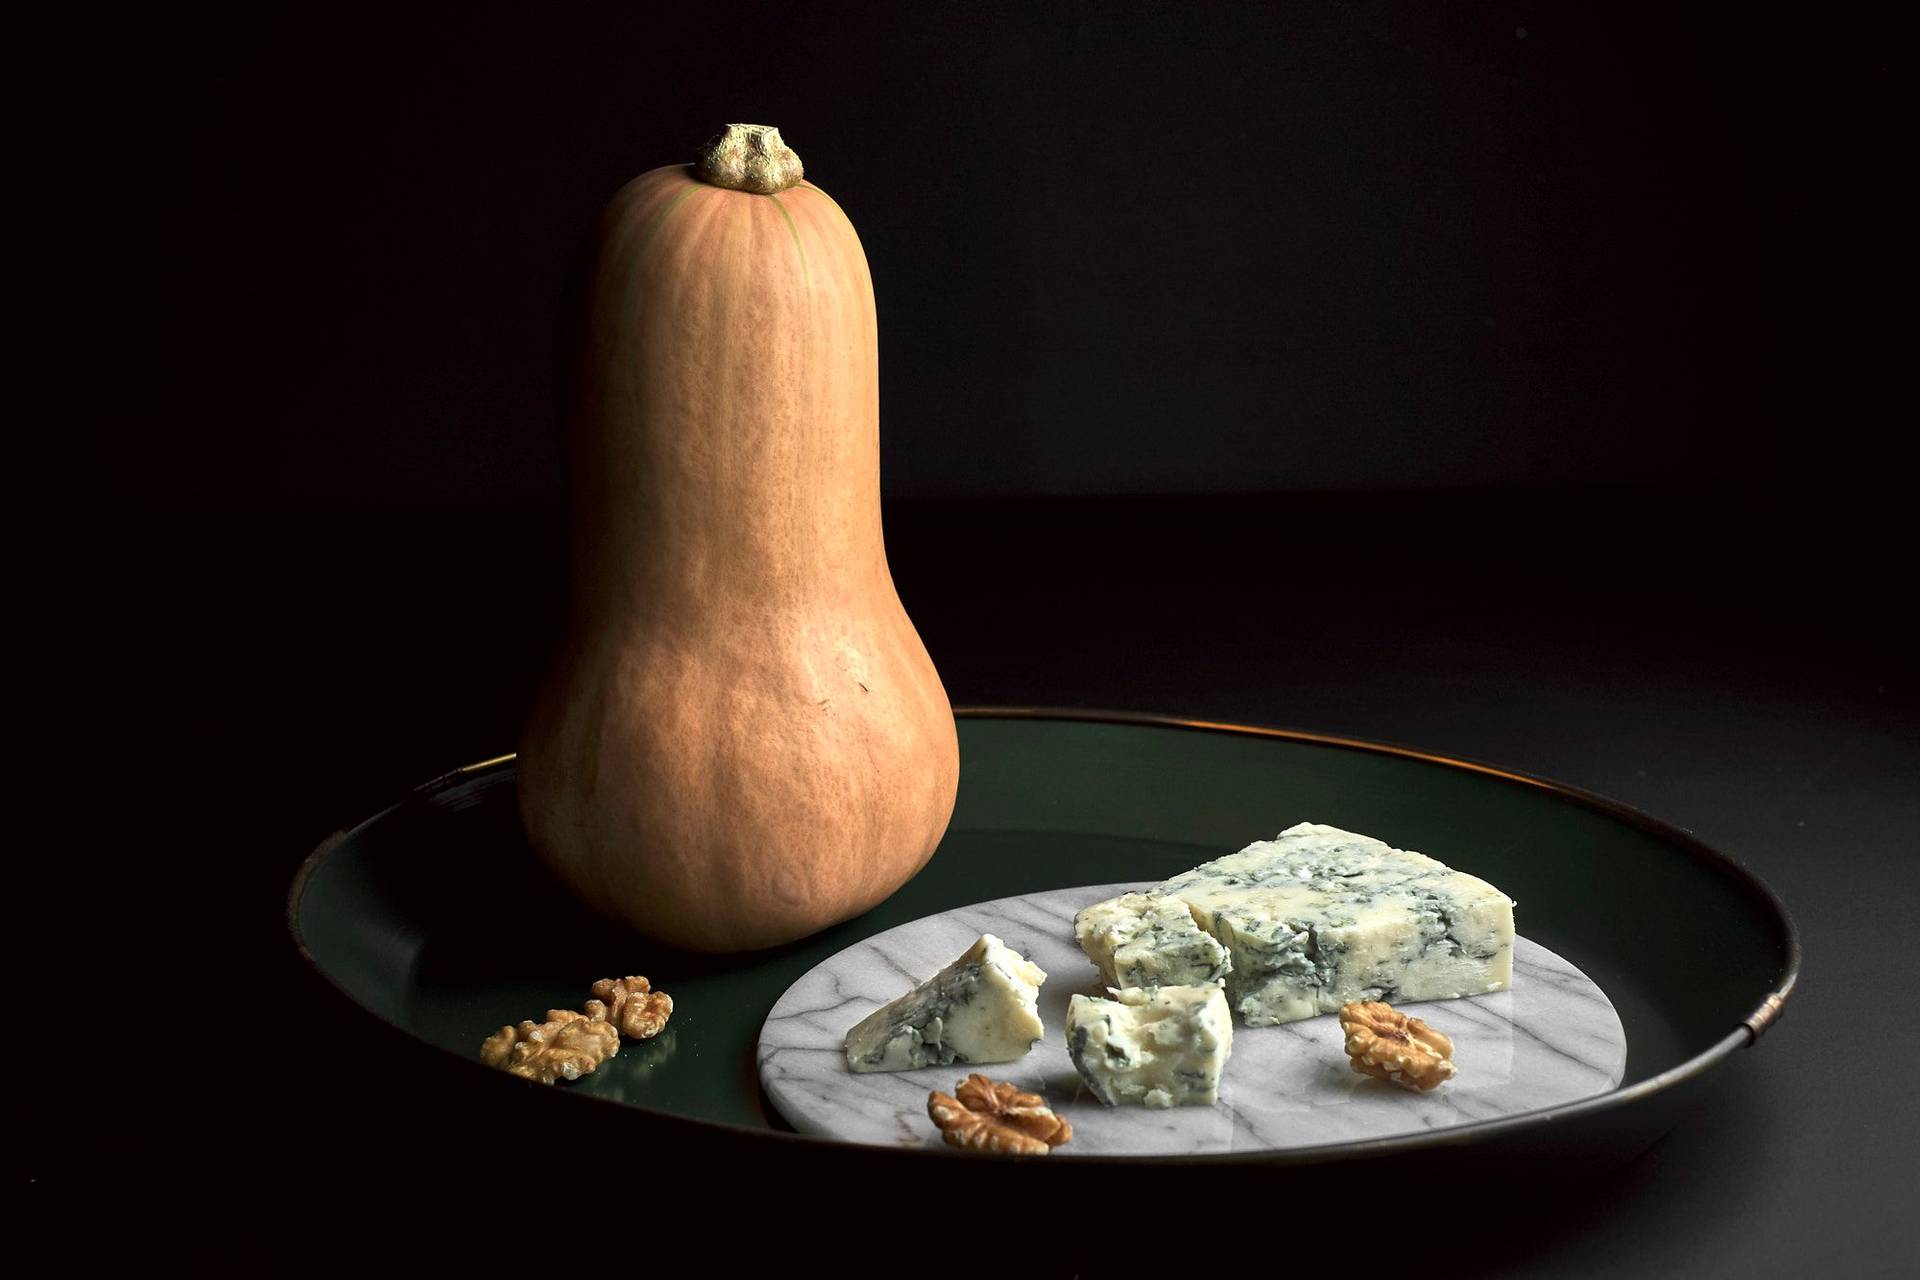 Kürbis, Blauschimmel Käse und Walnüsse auf grünem Tablett mit schwarzem Hintergrund